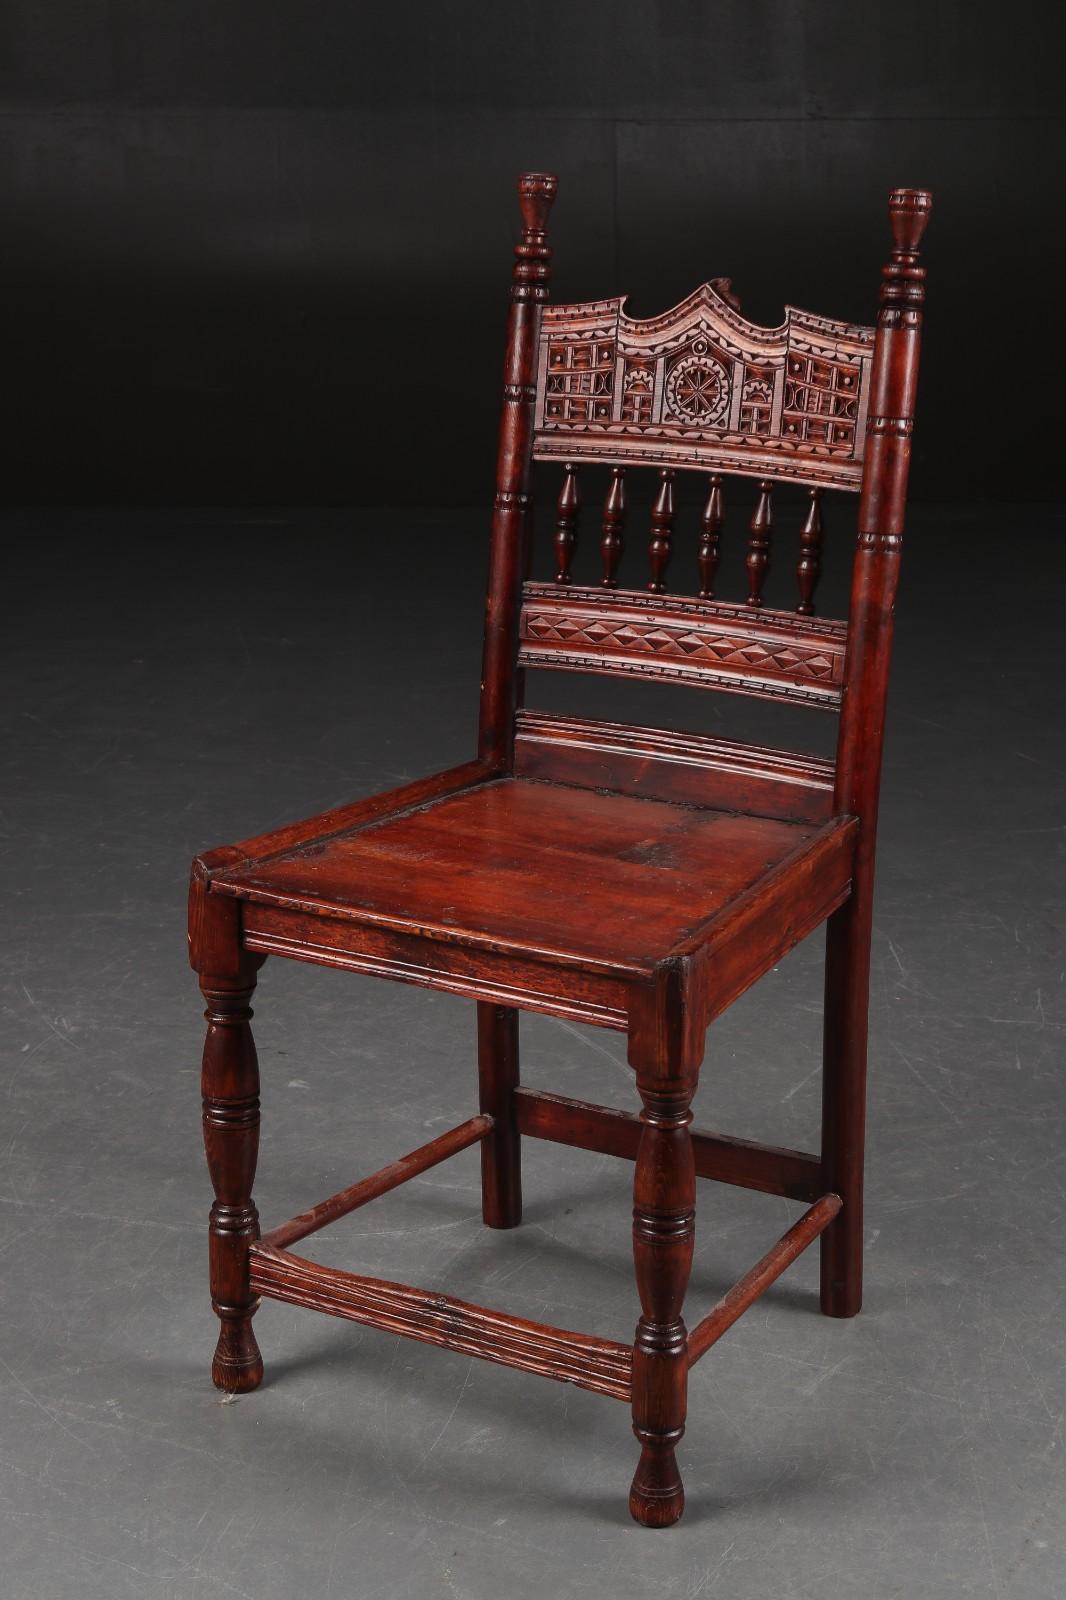 Cadre en bois dur avec assise et dossier en bois, fabriqué en Chine vers 1920-1930. 
Délai de livraison de 3 à 4 semaines.